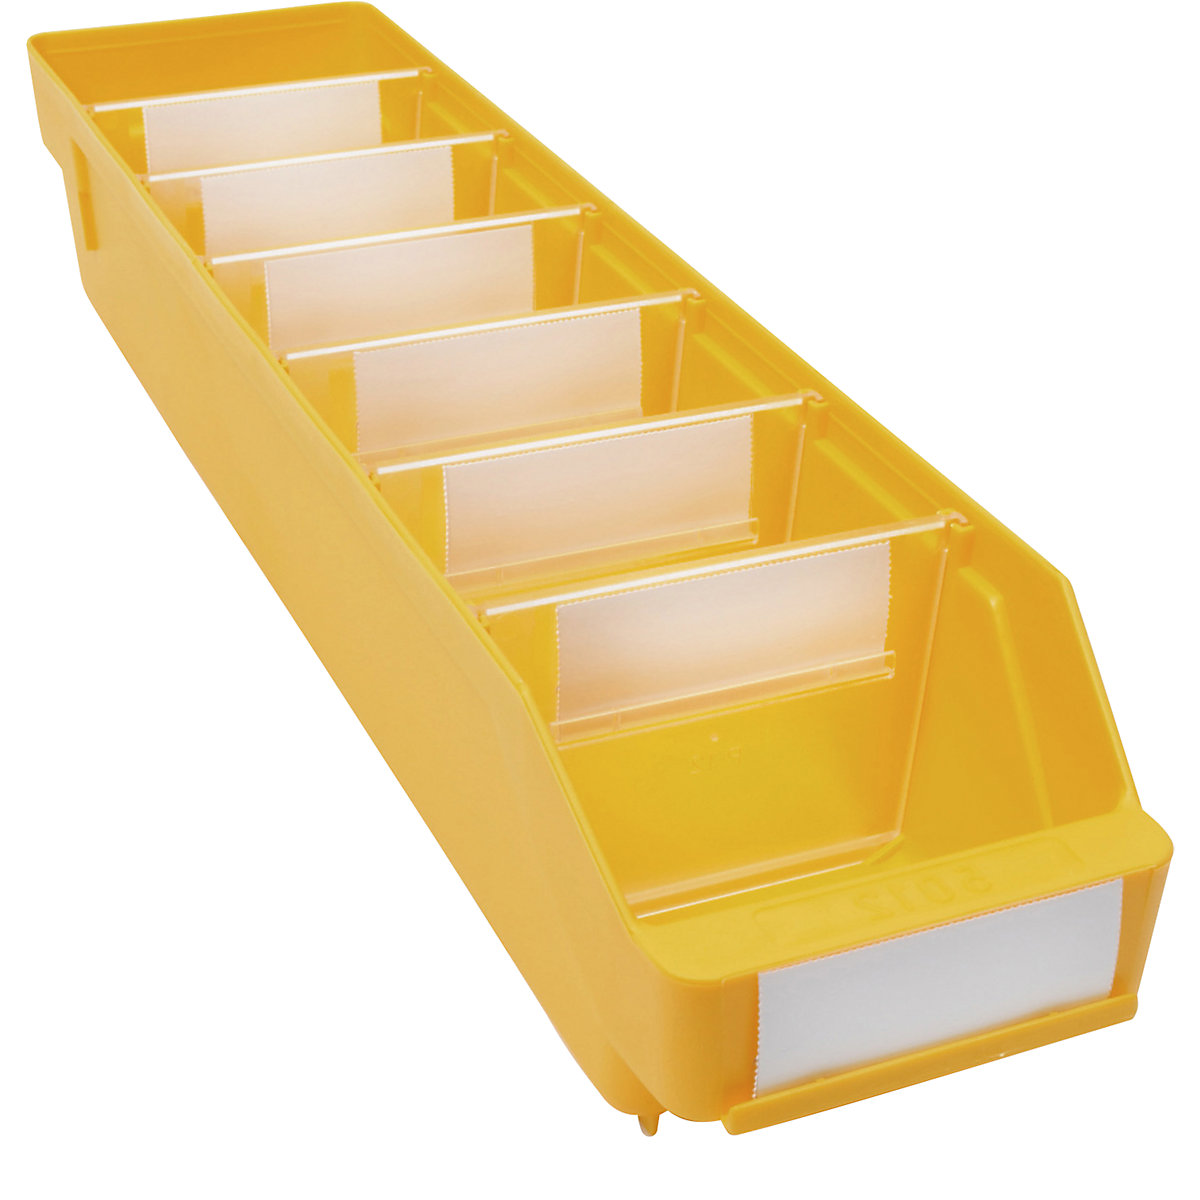 Kutija za regale od polipropilena otpornog na udarce – STEMO, u žutoj boji, DxŠxV 500 x 118 x 95 mm, pak. 30 kom.-19